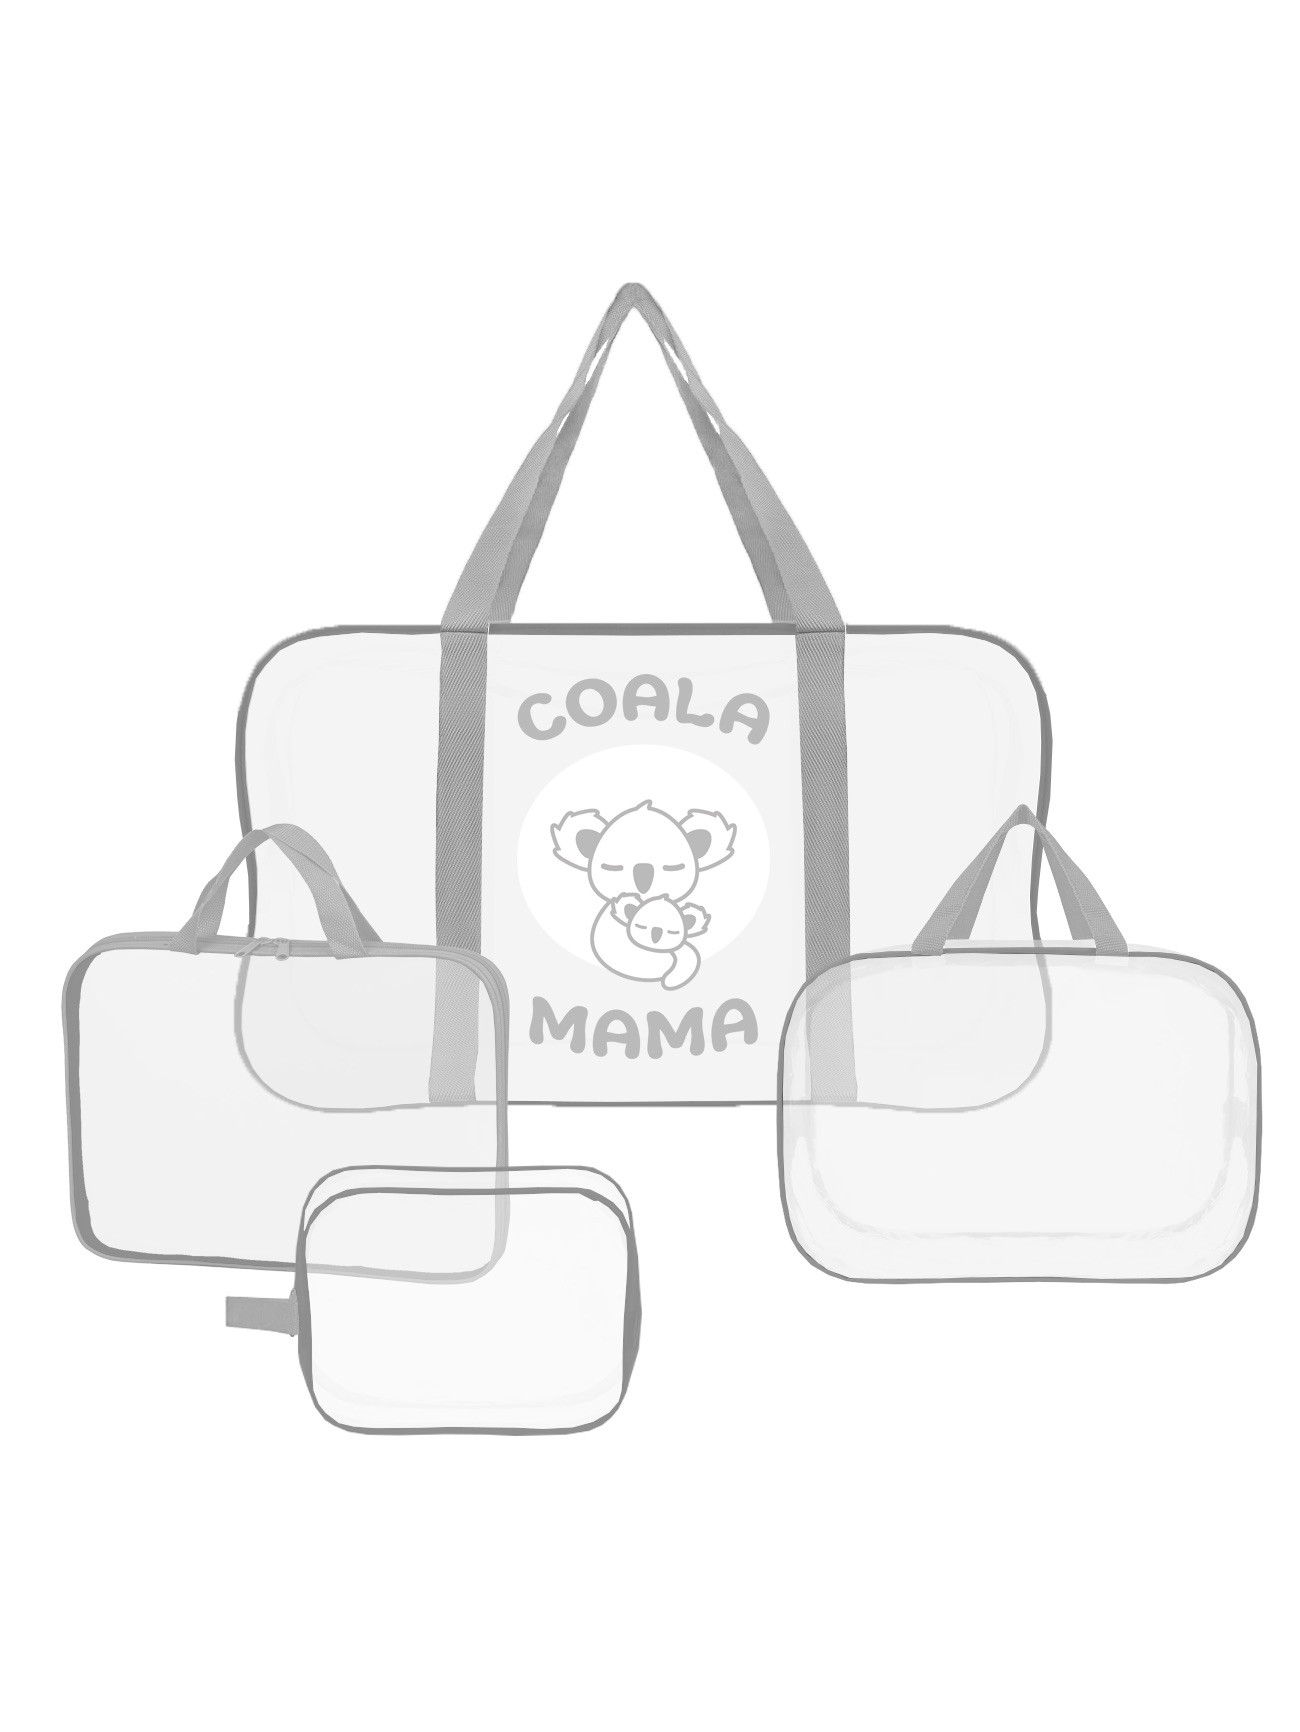 Набор сумок в роддом Coala Mama, Stone, 4 шт универсальных размеров